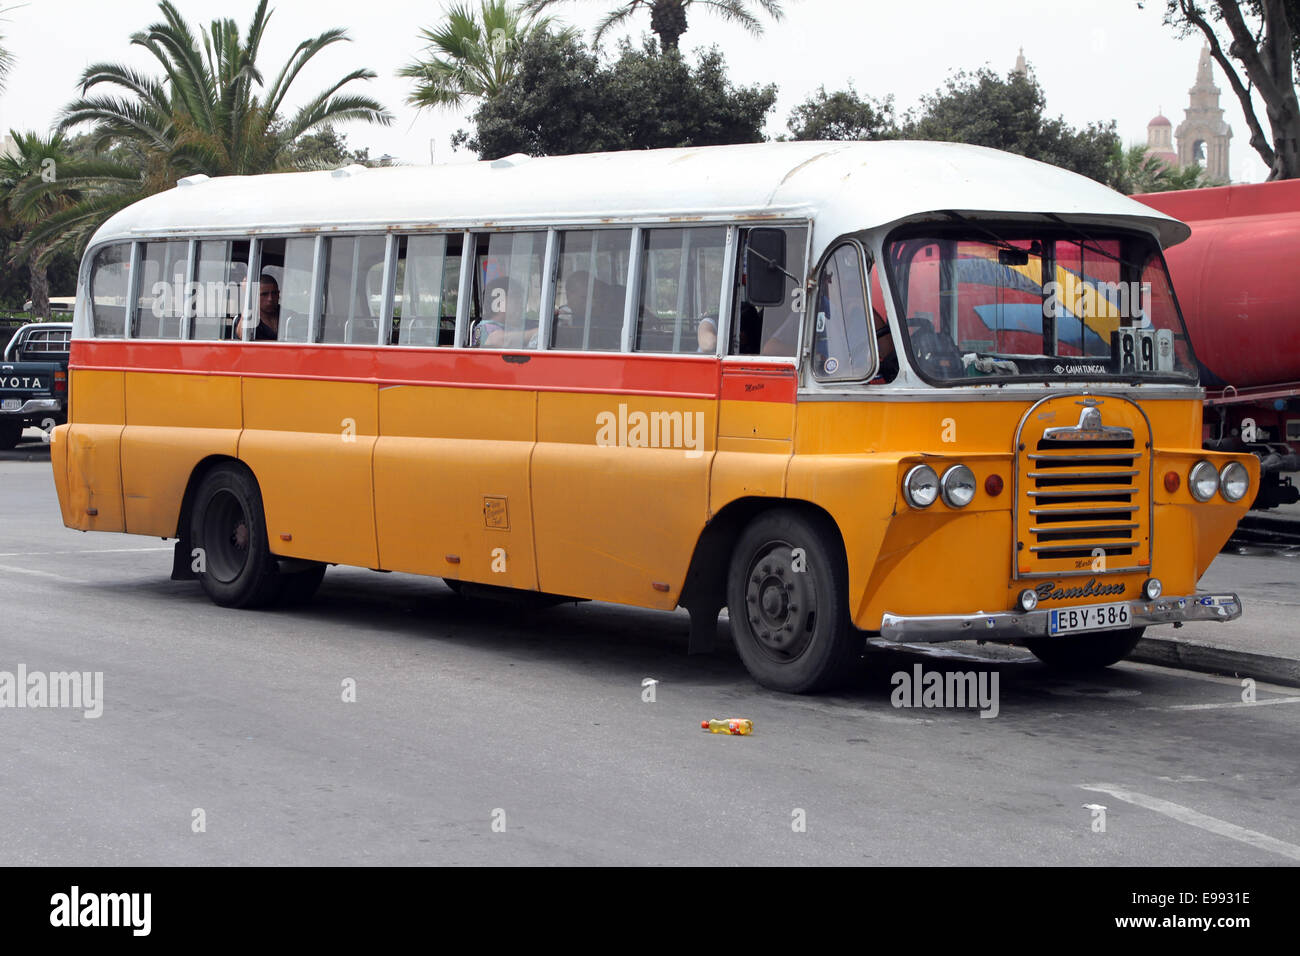 Old passenger bus in Valletta, Malta Stock Photo